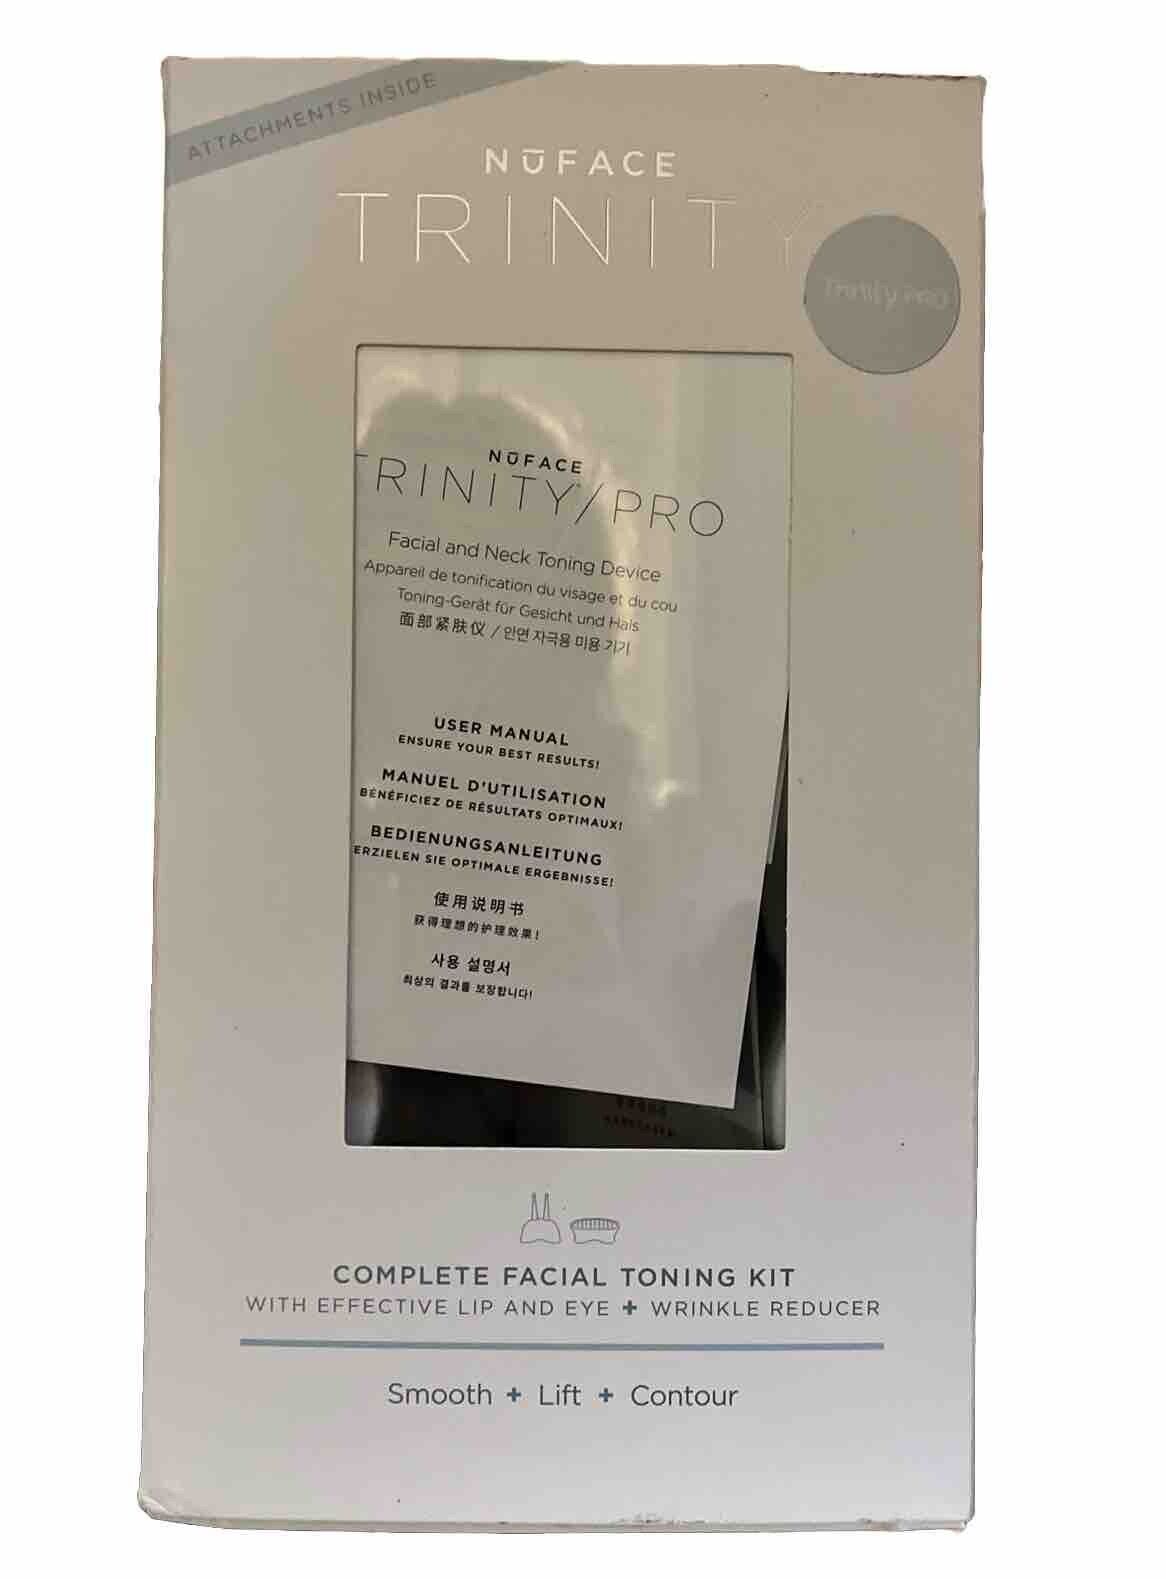 NUFACE Trinity Advanced Facial Toning Device